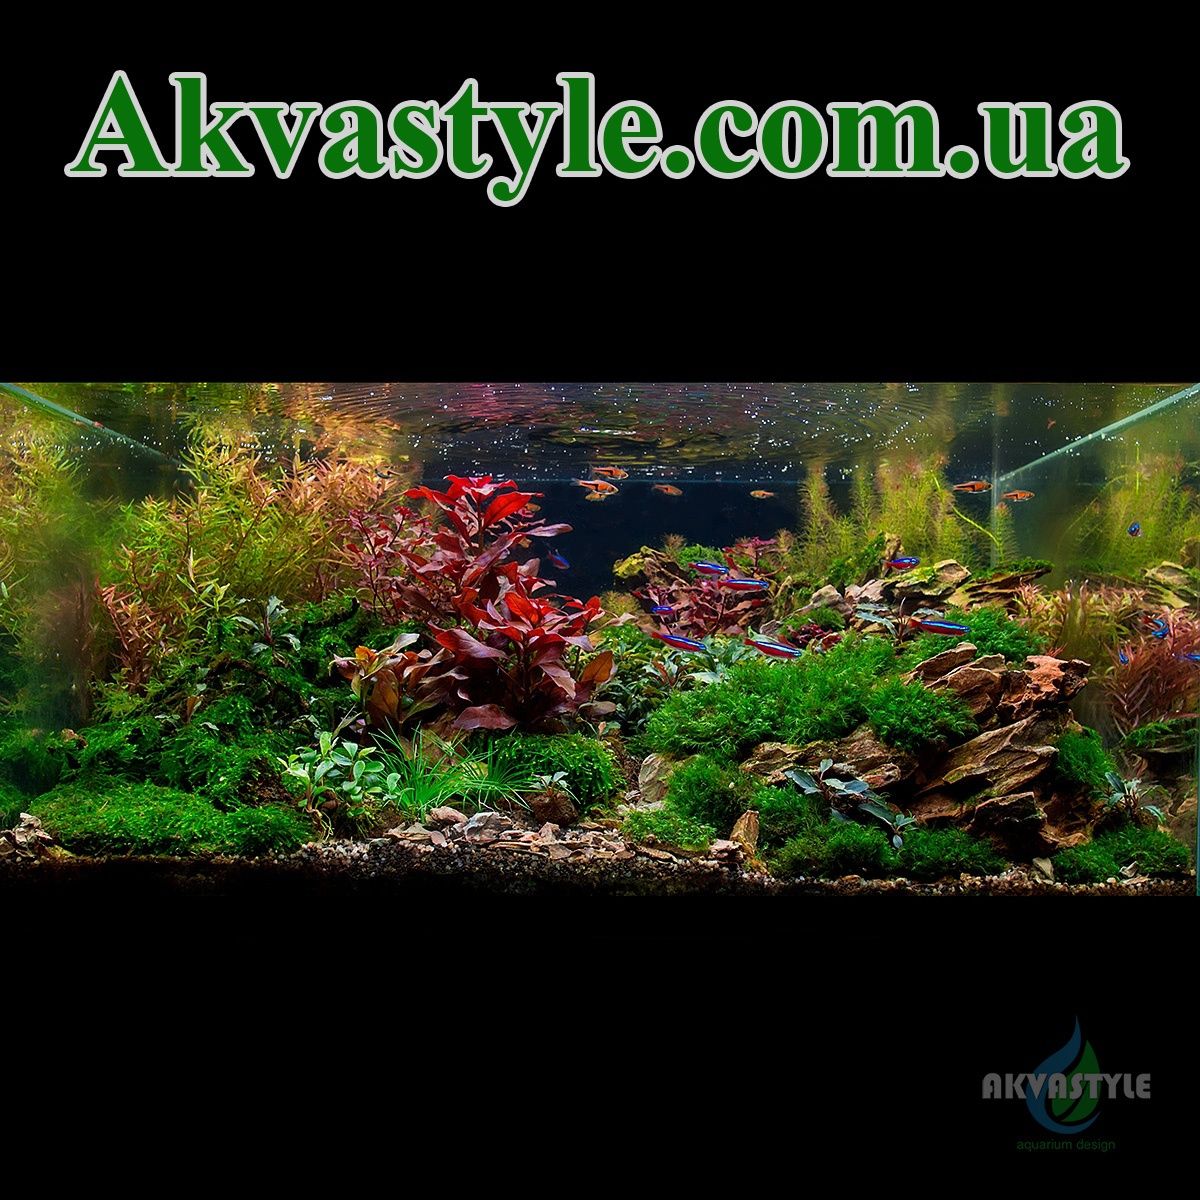 Рослини та декор для акваріума. Буцефаландри, мохи, папороті, анубіаси